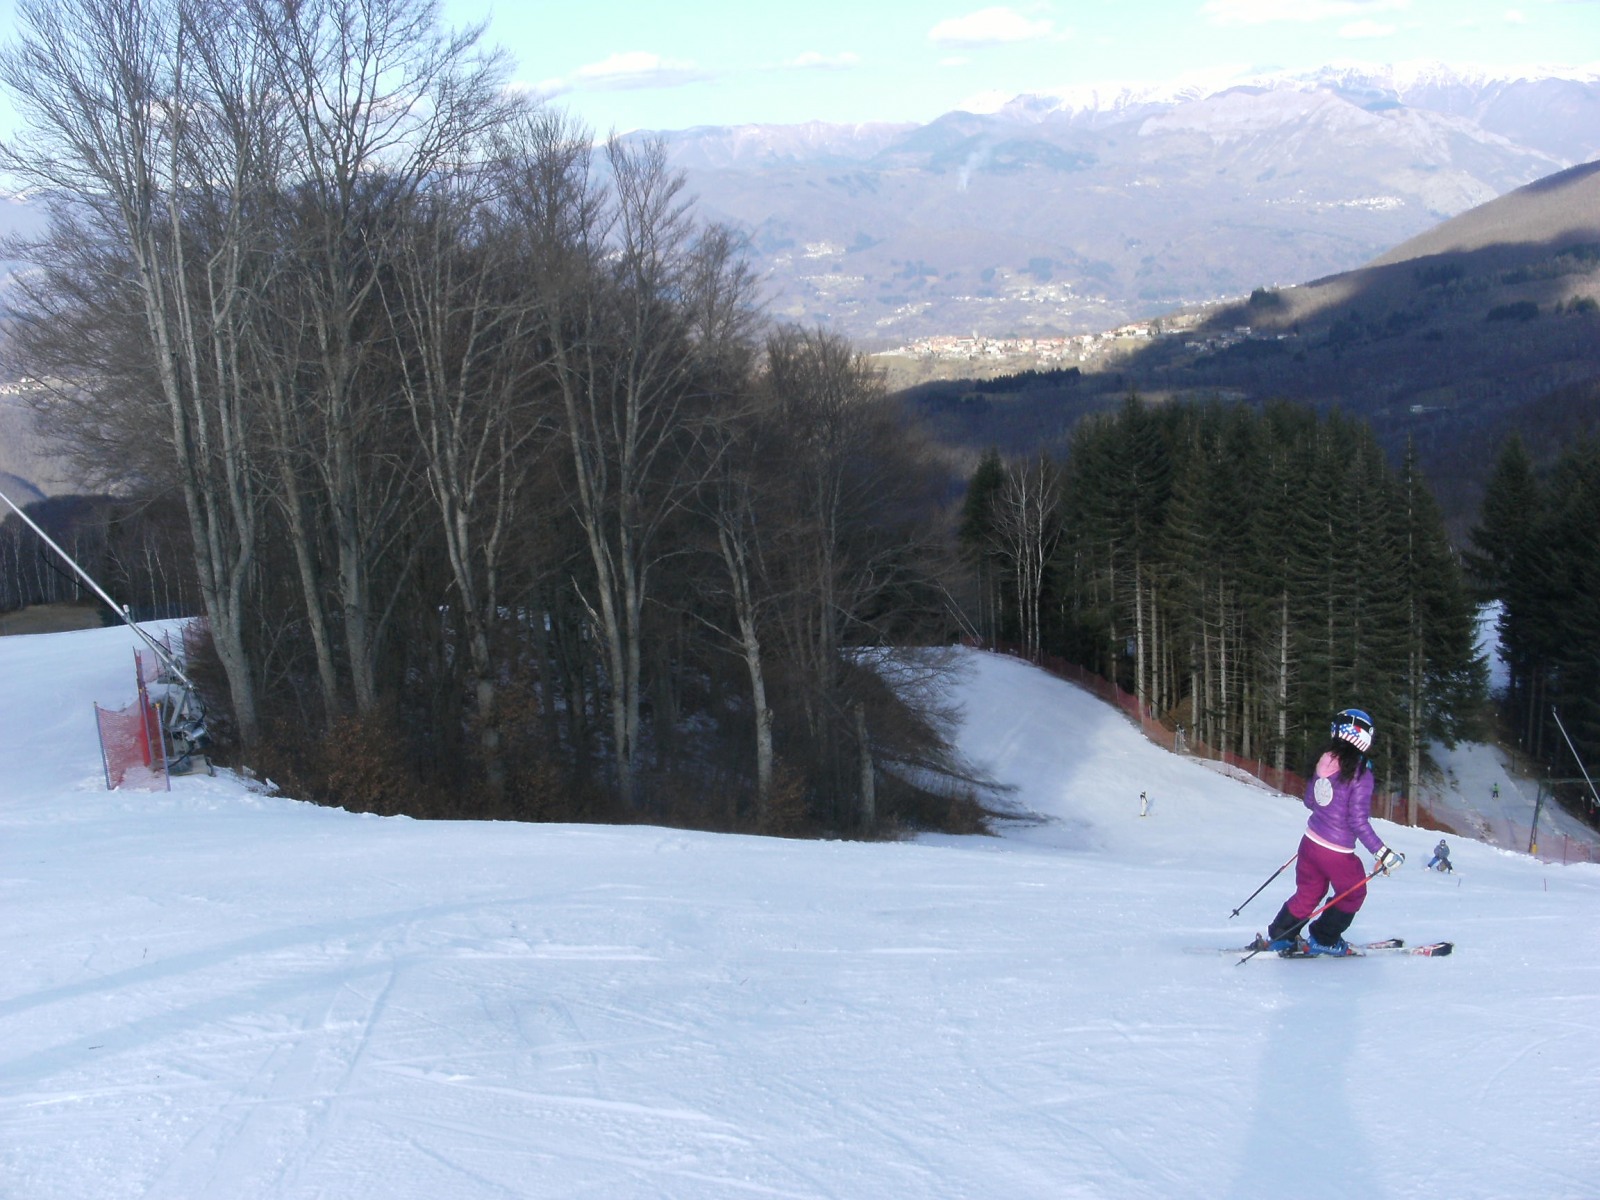 Careggine - Situazione neve, impianti e piste | SkiForum - Sci, turismo,  sport e passione